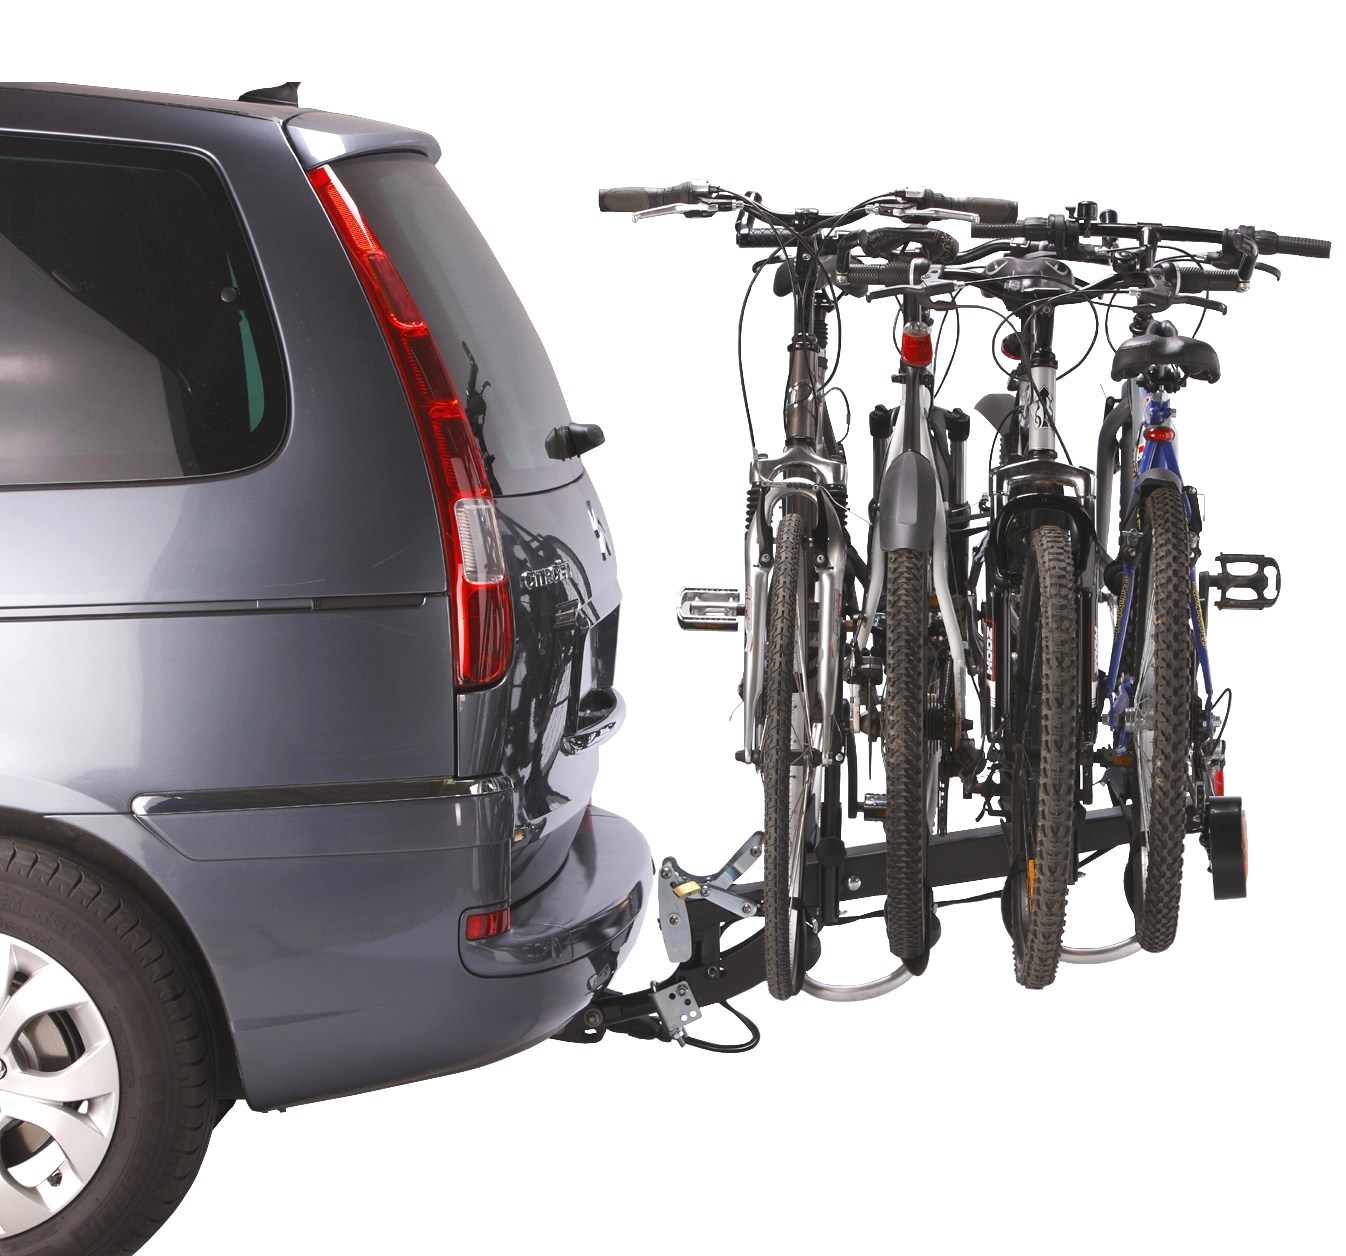 Transporter son vélo sur un porte-vélo avec attelage